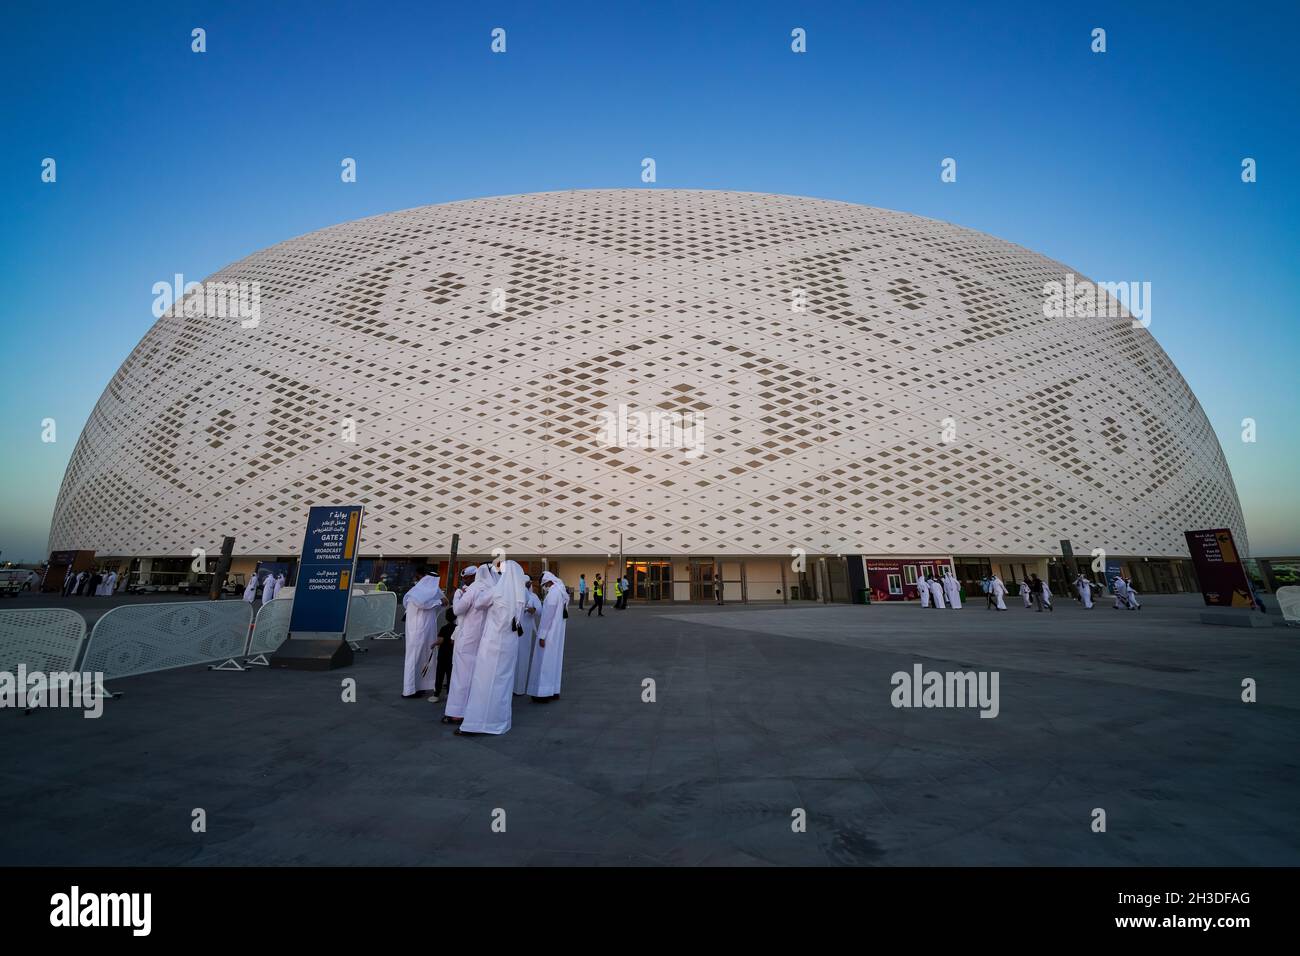 Le stade Al Thumama, inauguré avec la finale de la coupe Emir 2021 le 22 octobre 2021, sera l'un des lieux de la coupe du monde de la FIFA 2022 au Qatar. Banque D'Images